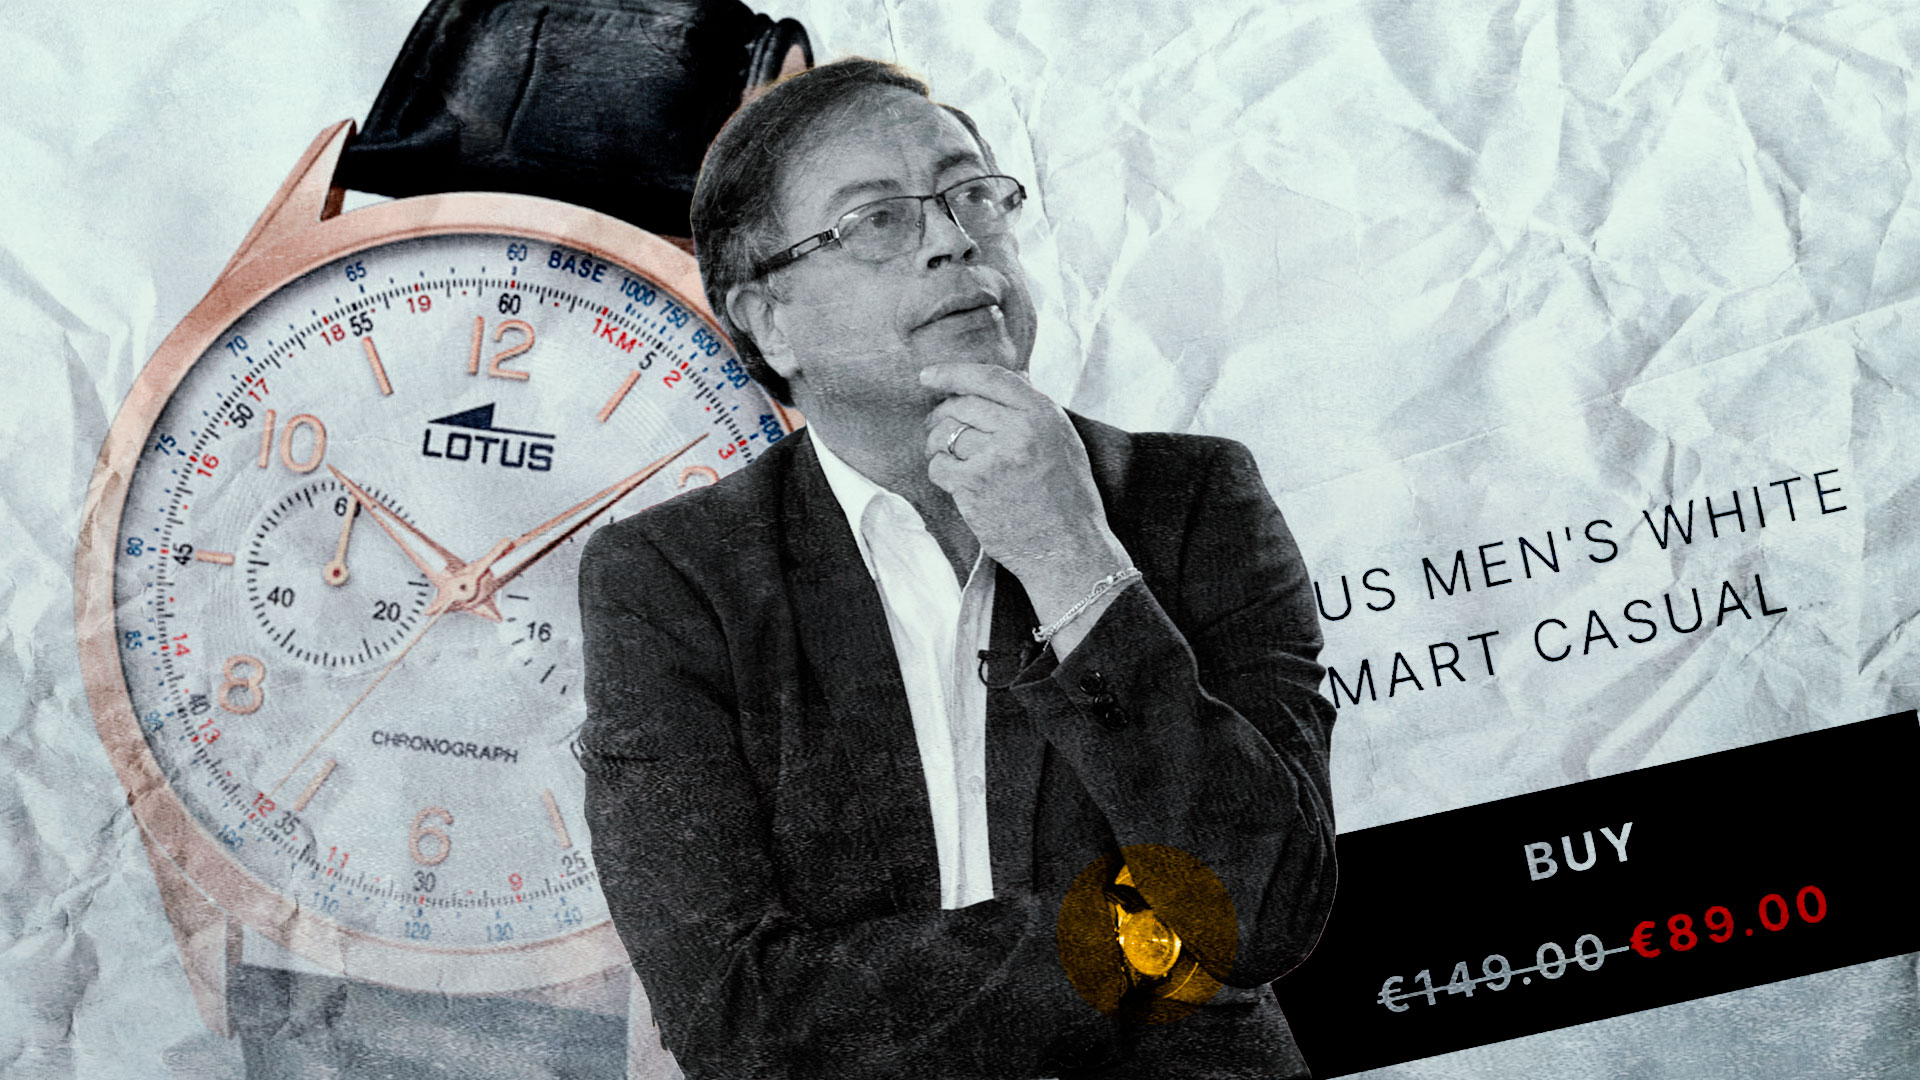 El presidente Gustavo Petro se refirió a su reloj de $190 millones: “Qué vaina. Creo que me engañaron”